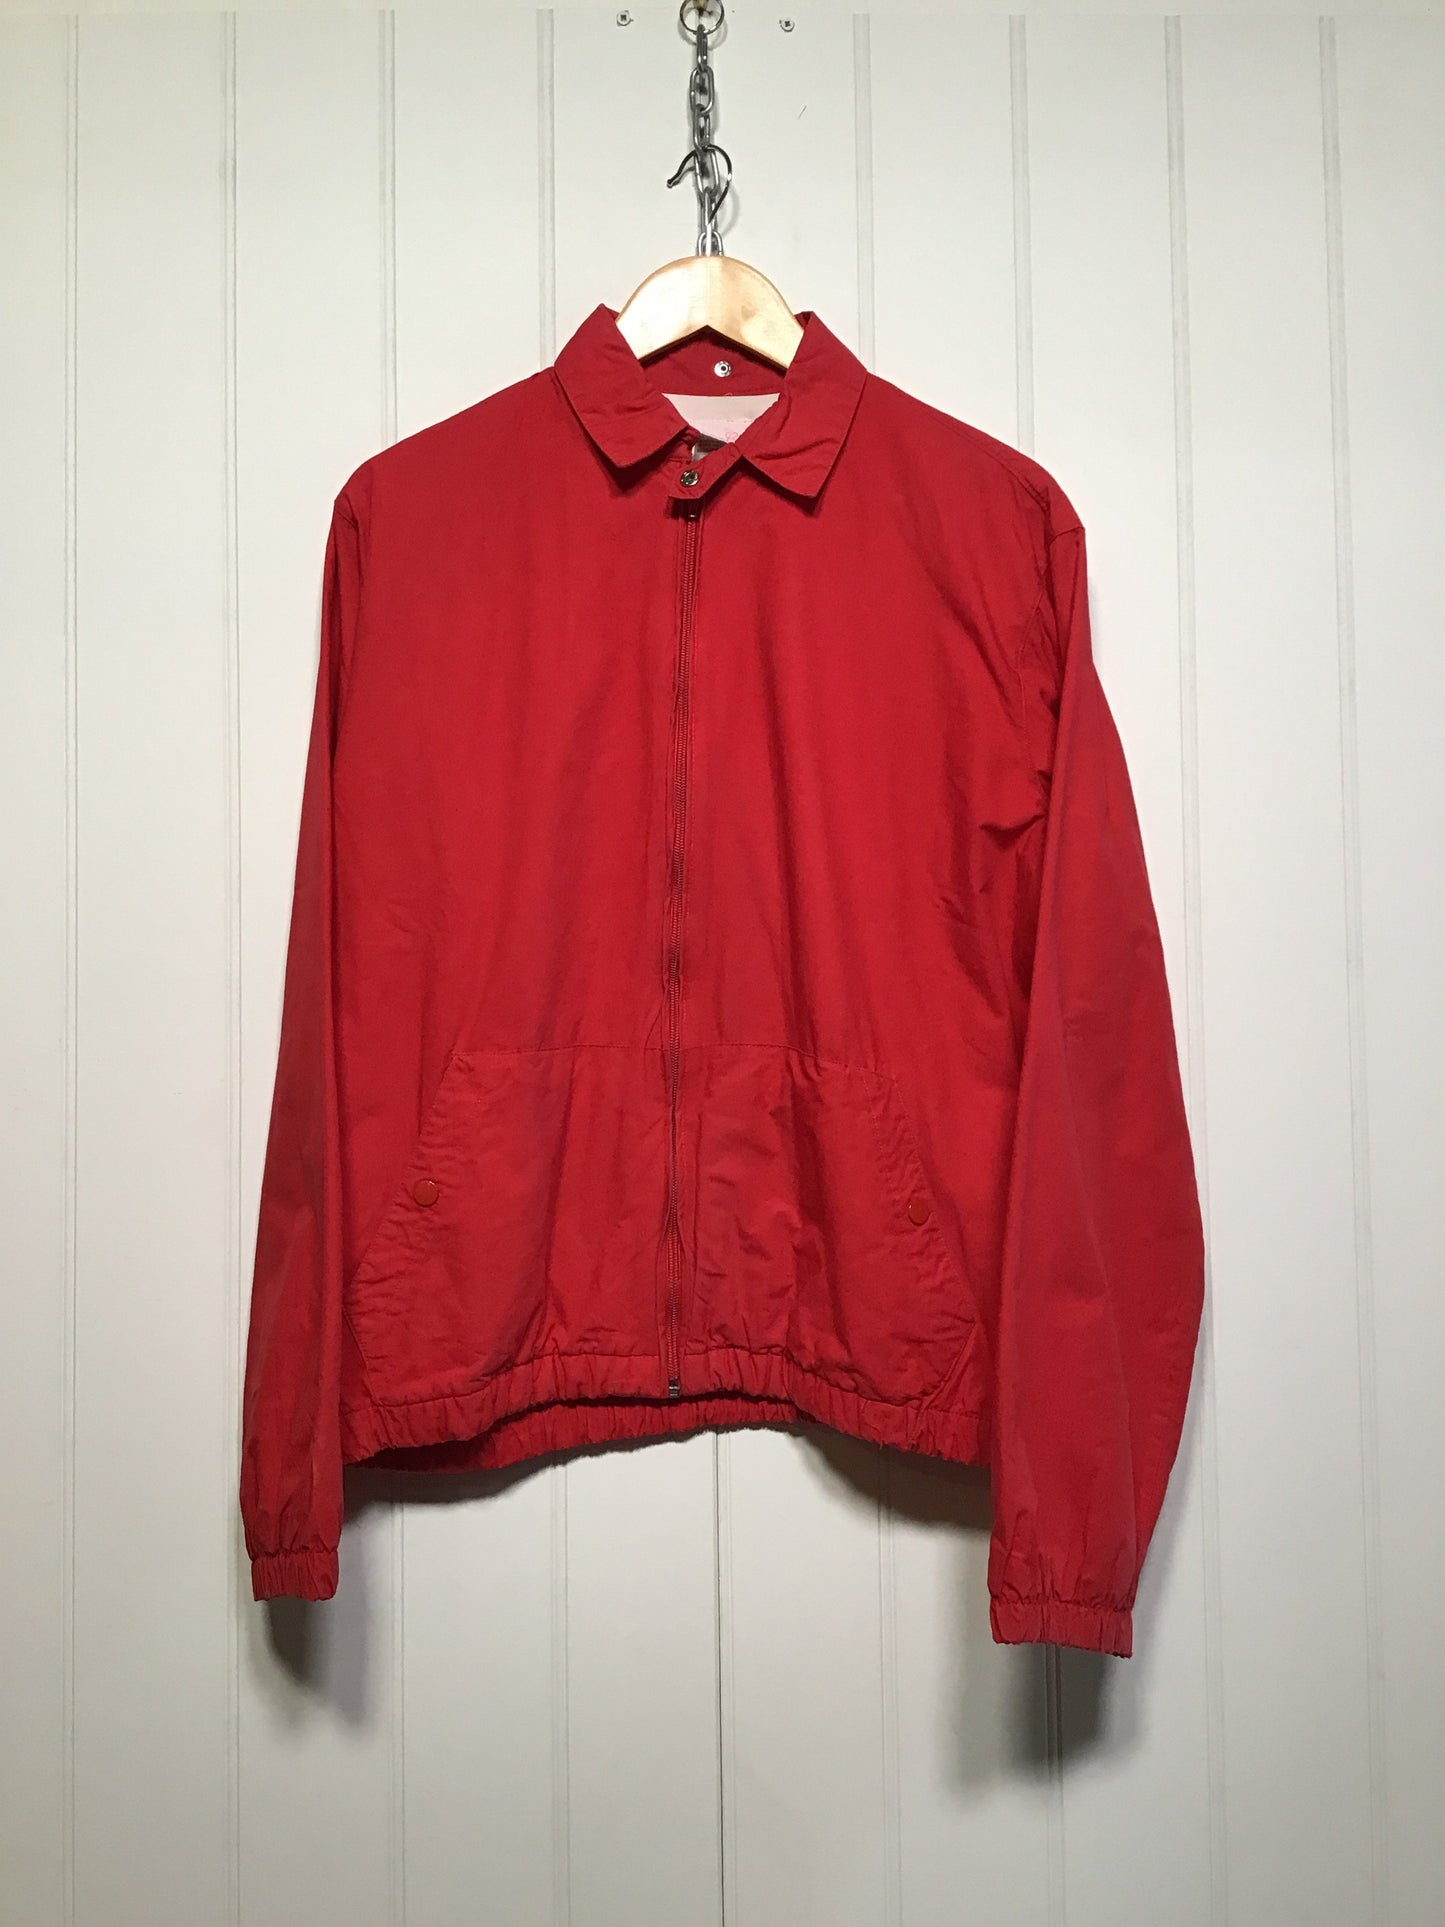 Red Harrington Jacket (Size M)